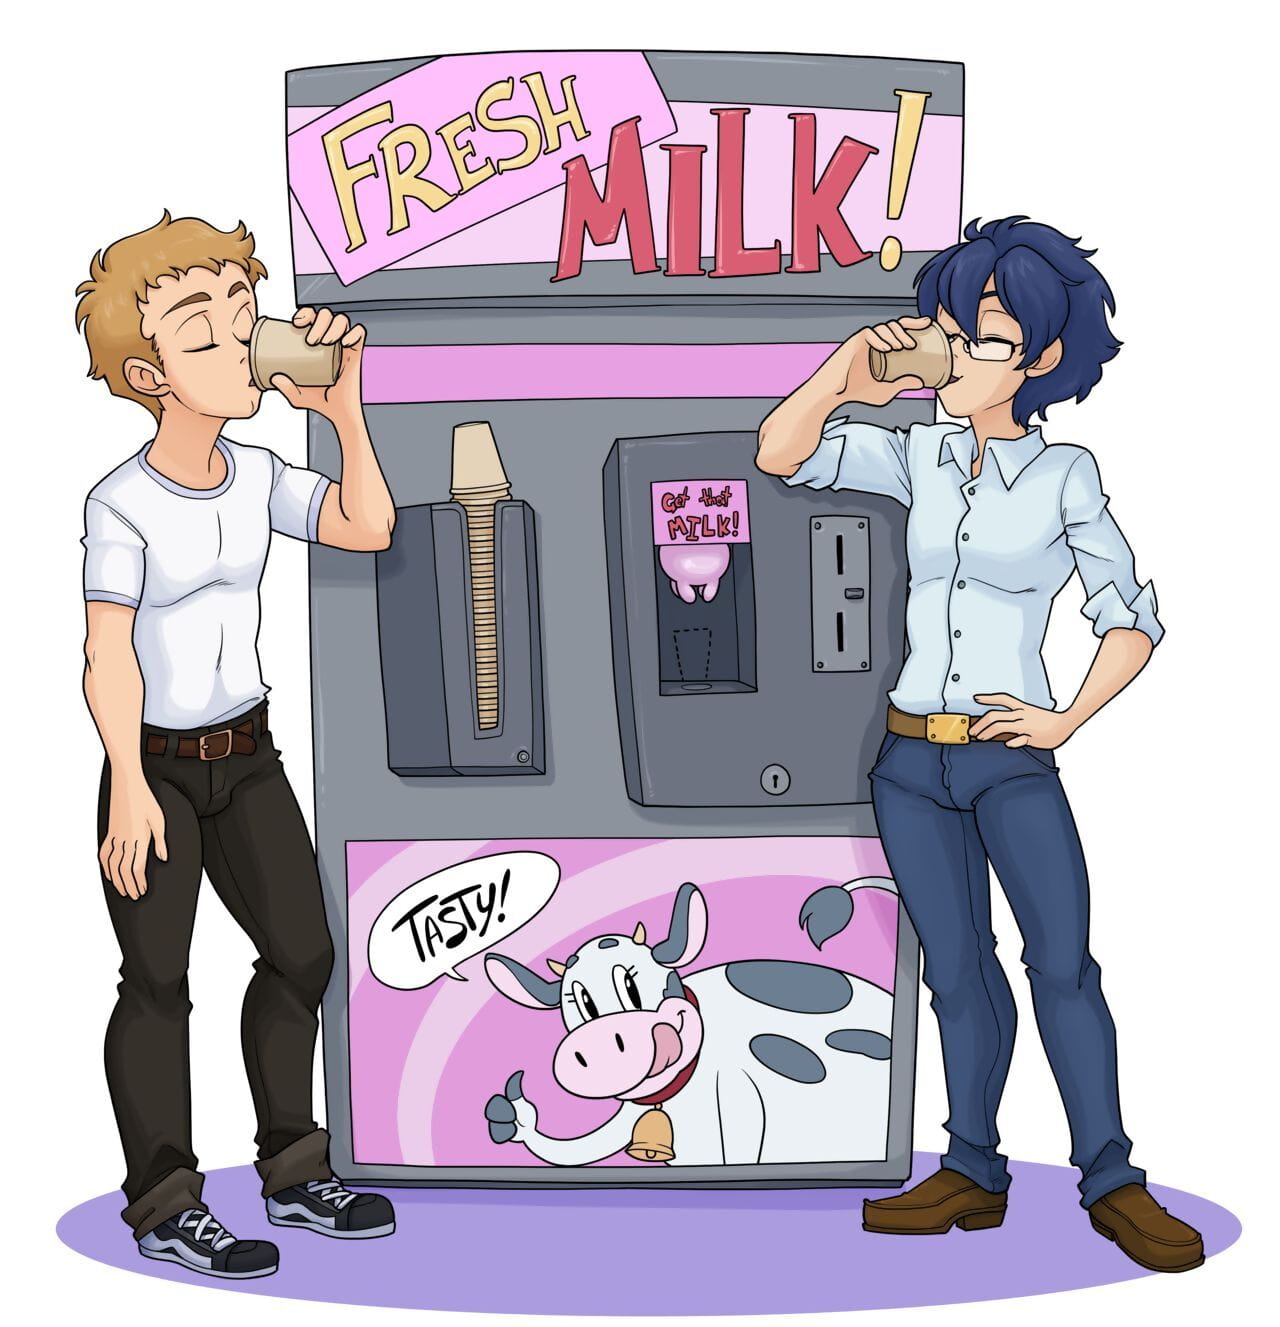 Grande milk! page 1